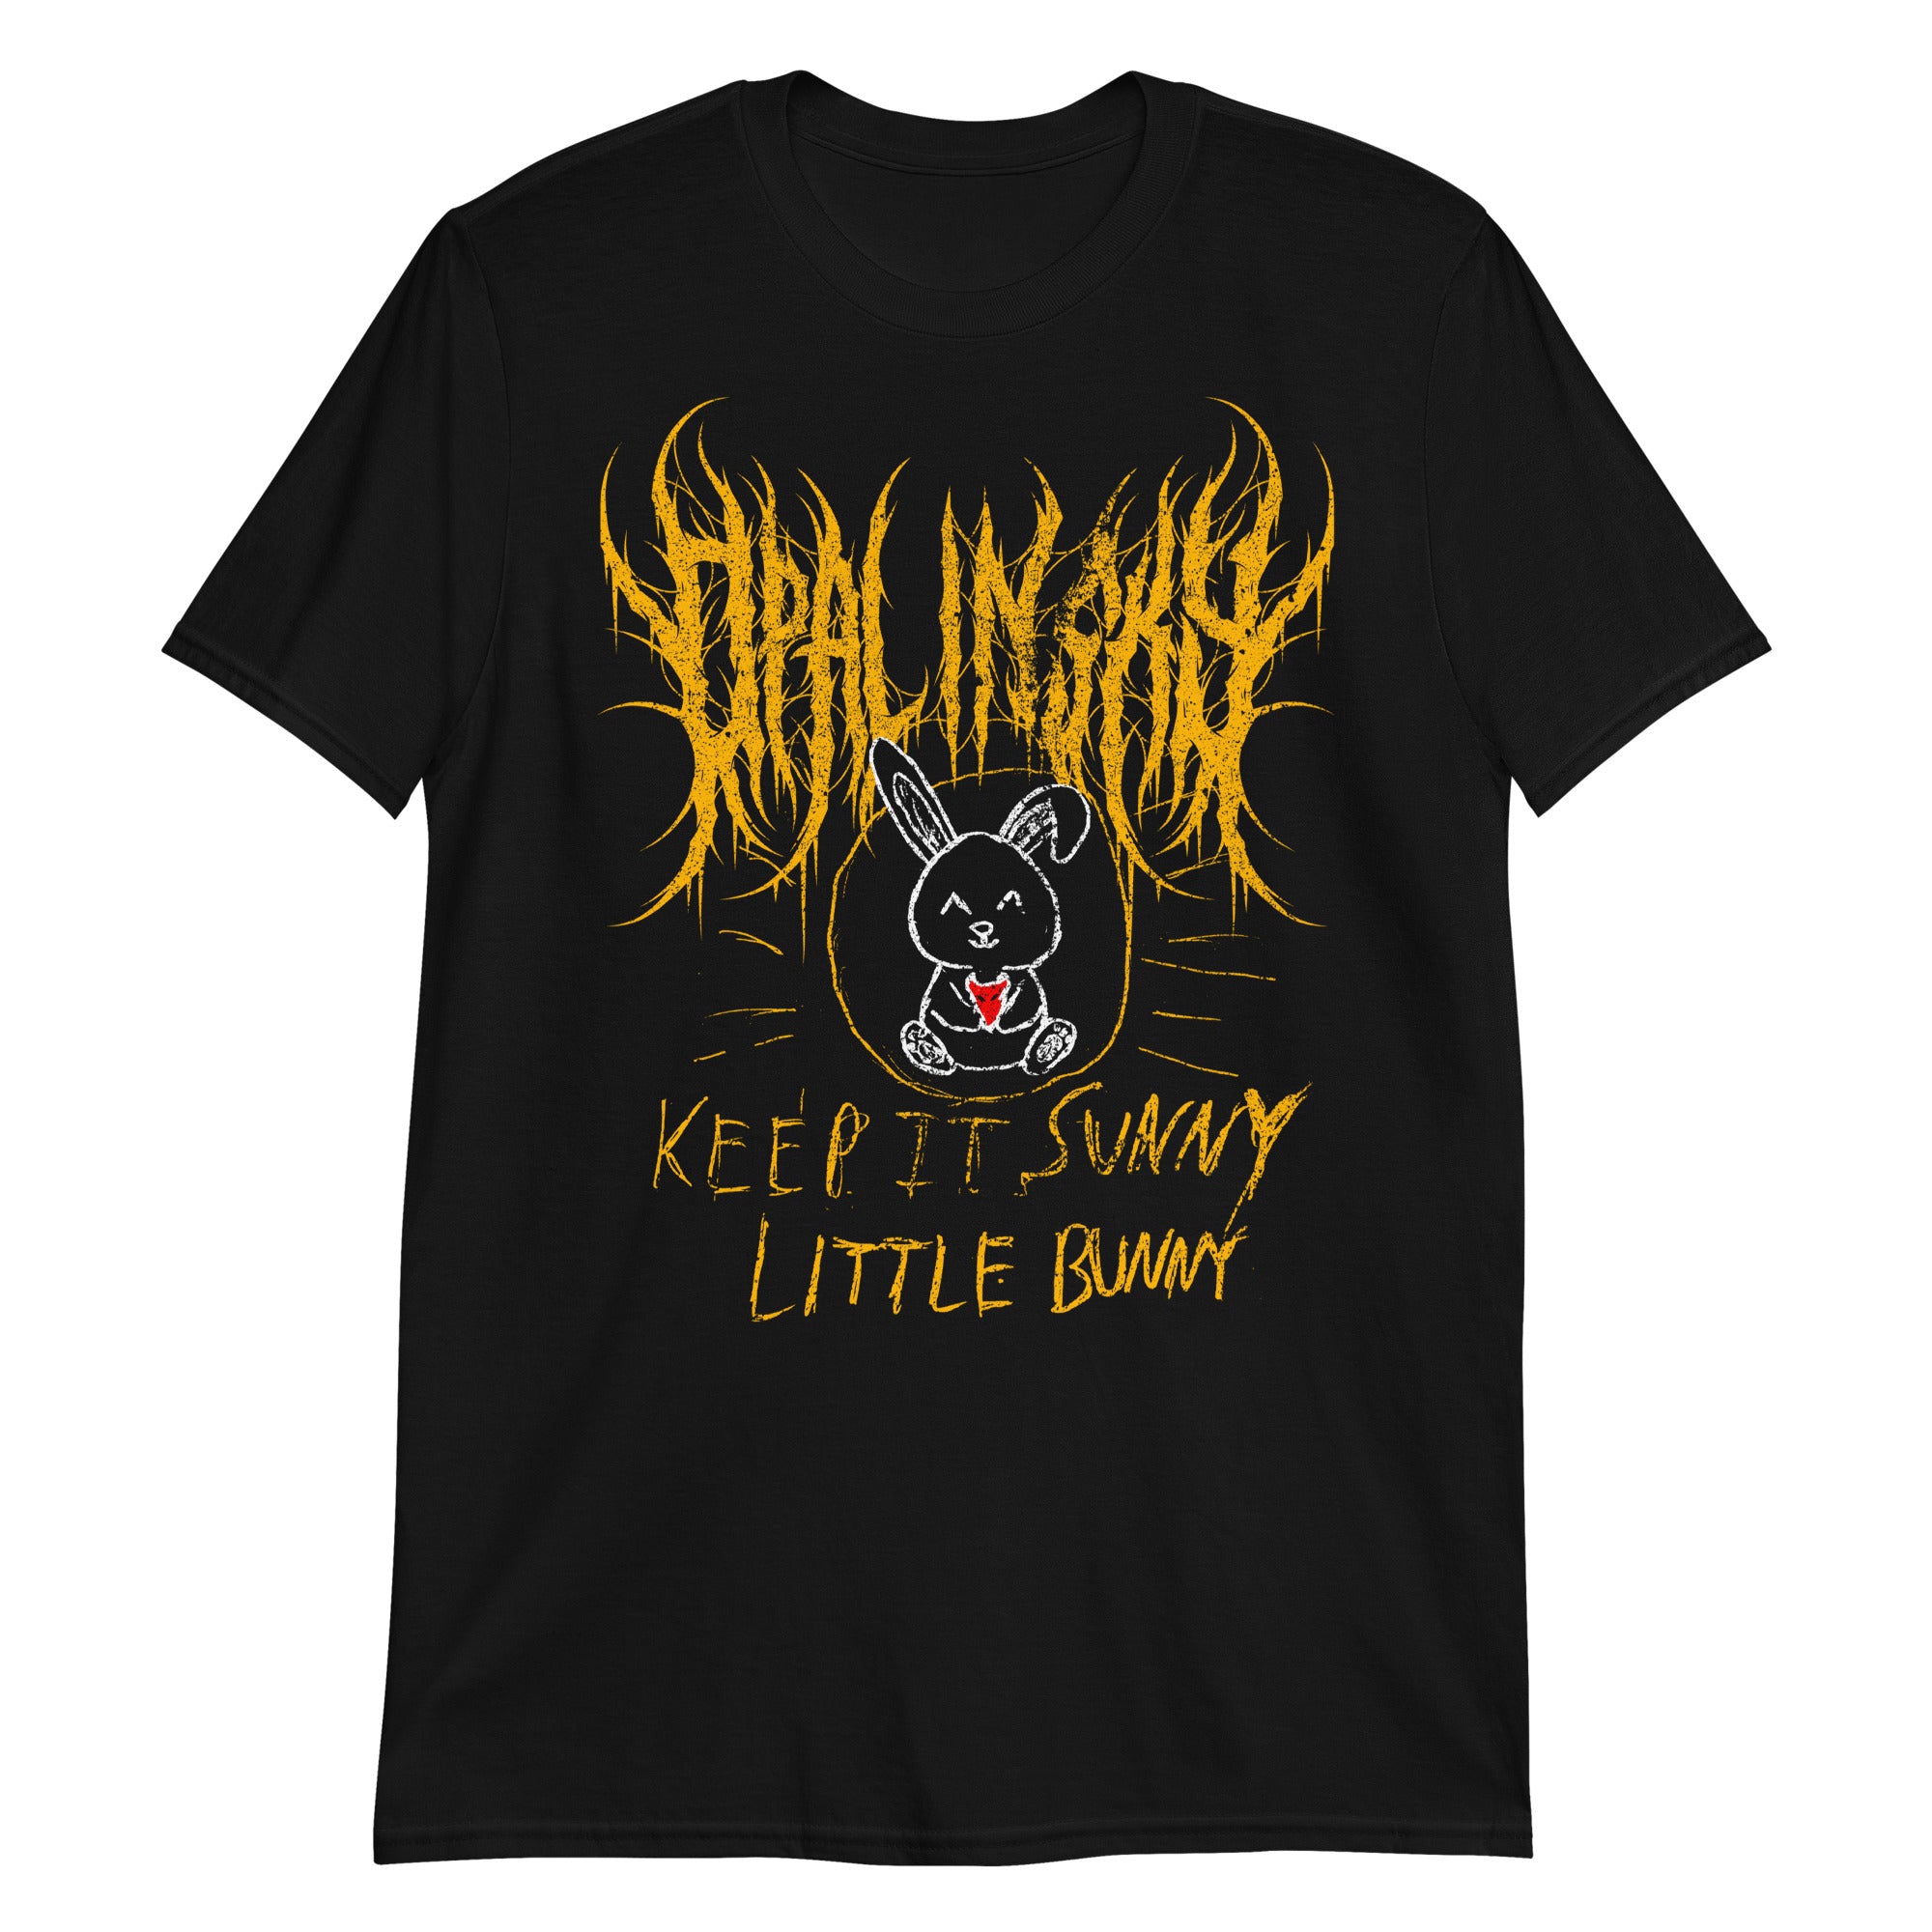 OPAL IN SKY Keep It Sunny Little Bunny Unisex T-Shirt – OPAL IN SKY Merch